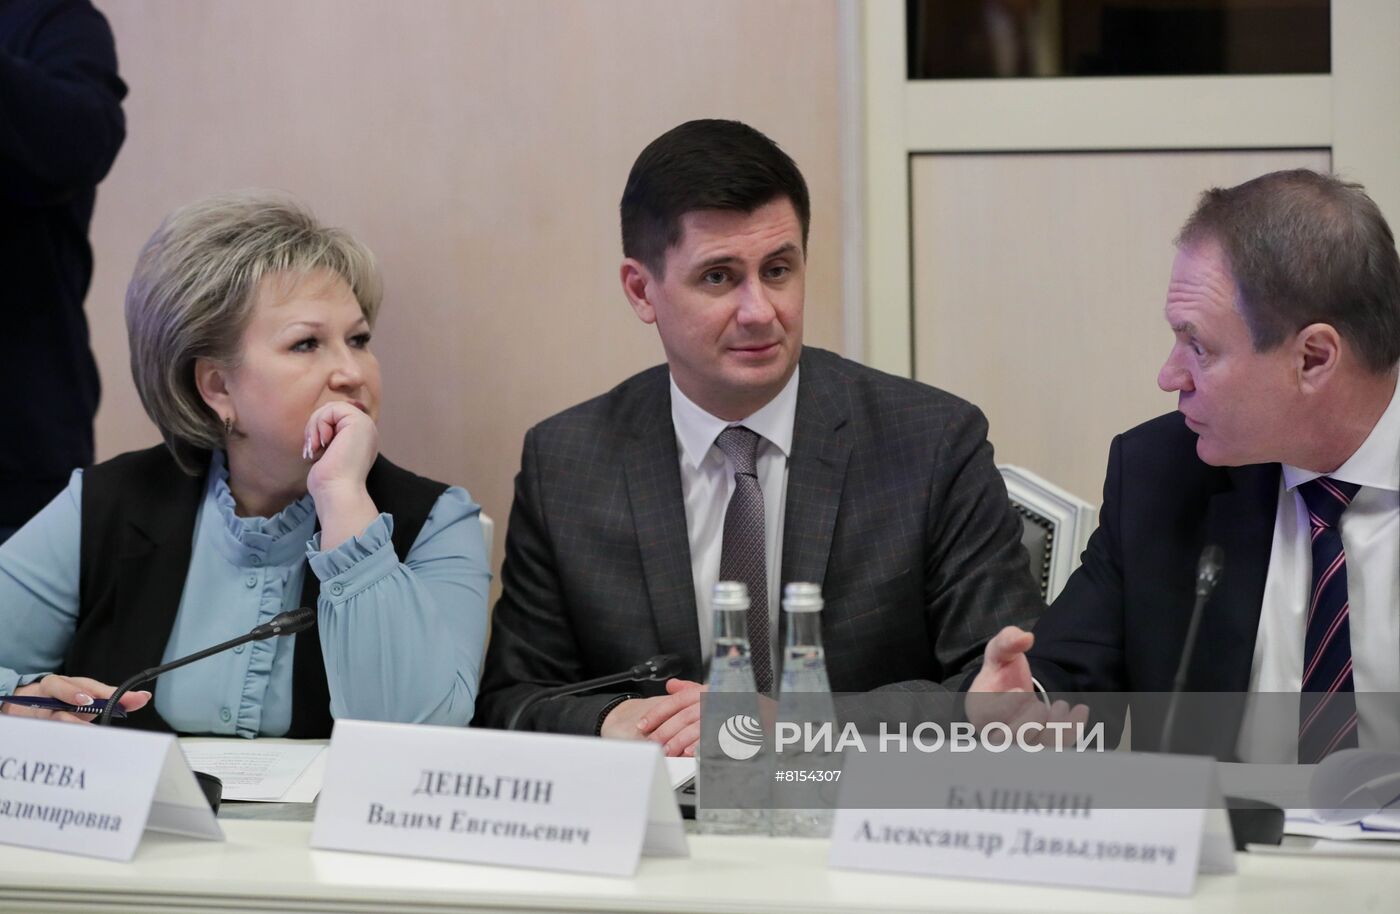 Первое заседание комиссии по биолабораториям на Украине